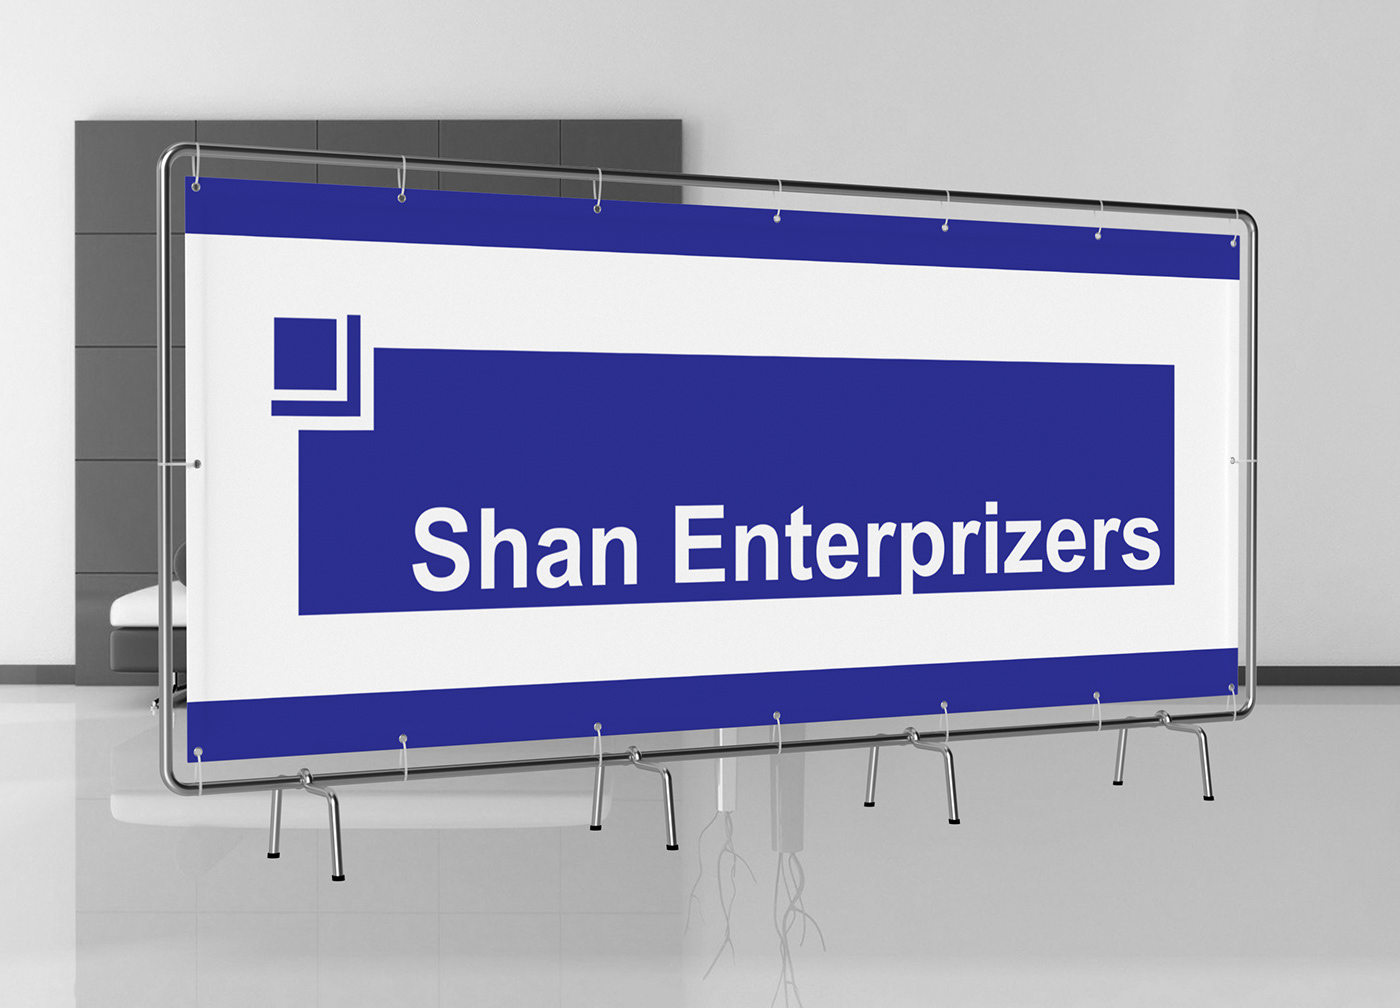 MOHSIN FIAZ designed Shan Enterpeizers